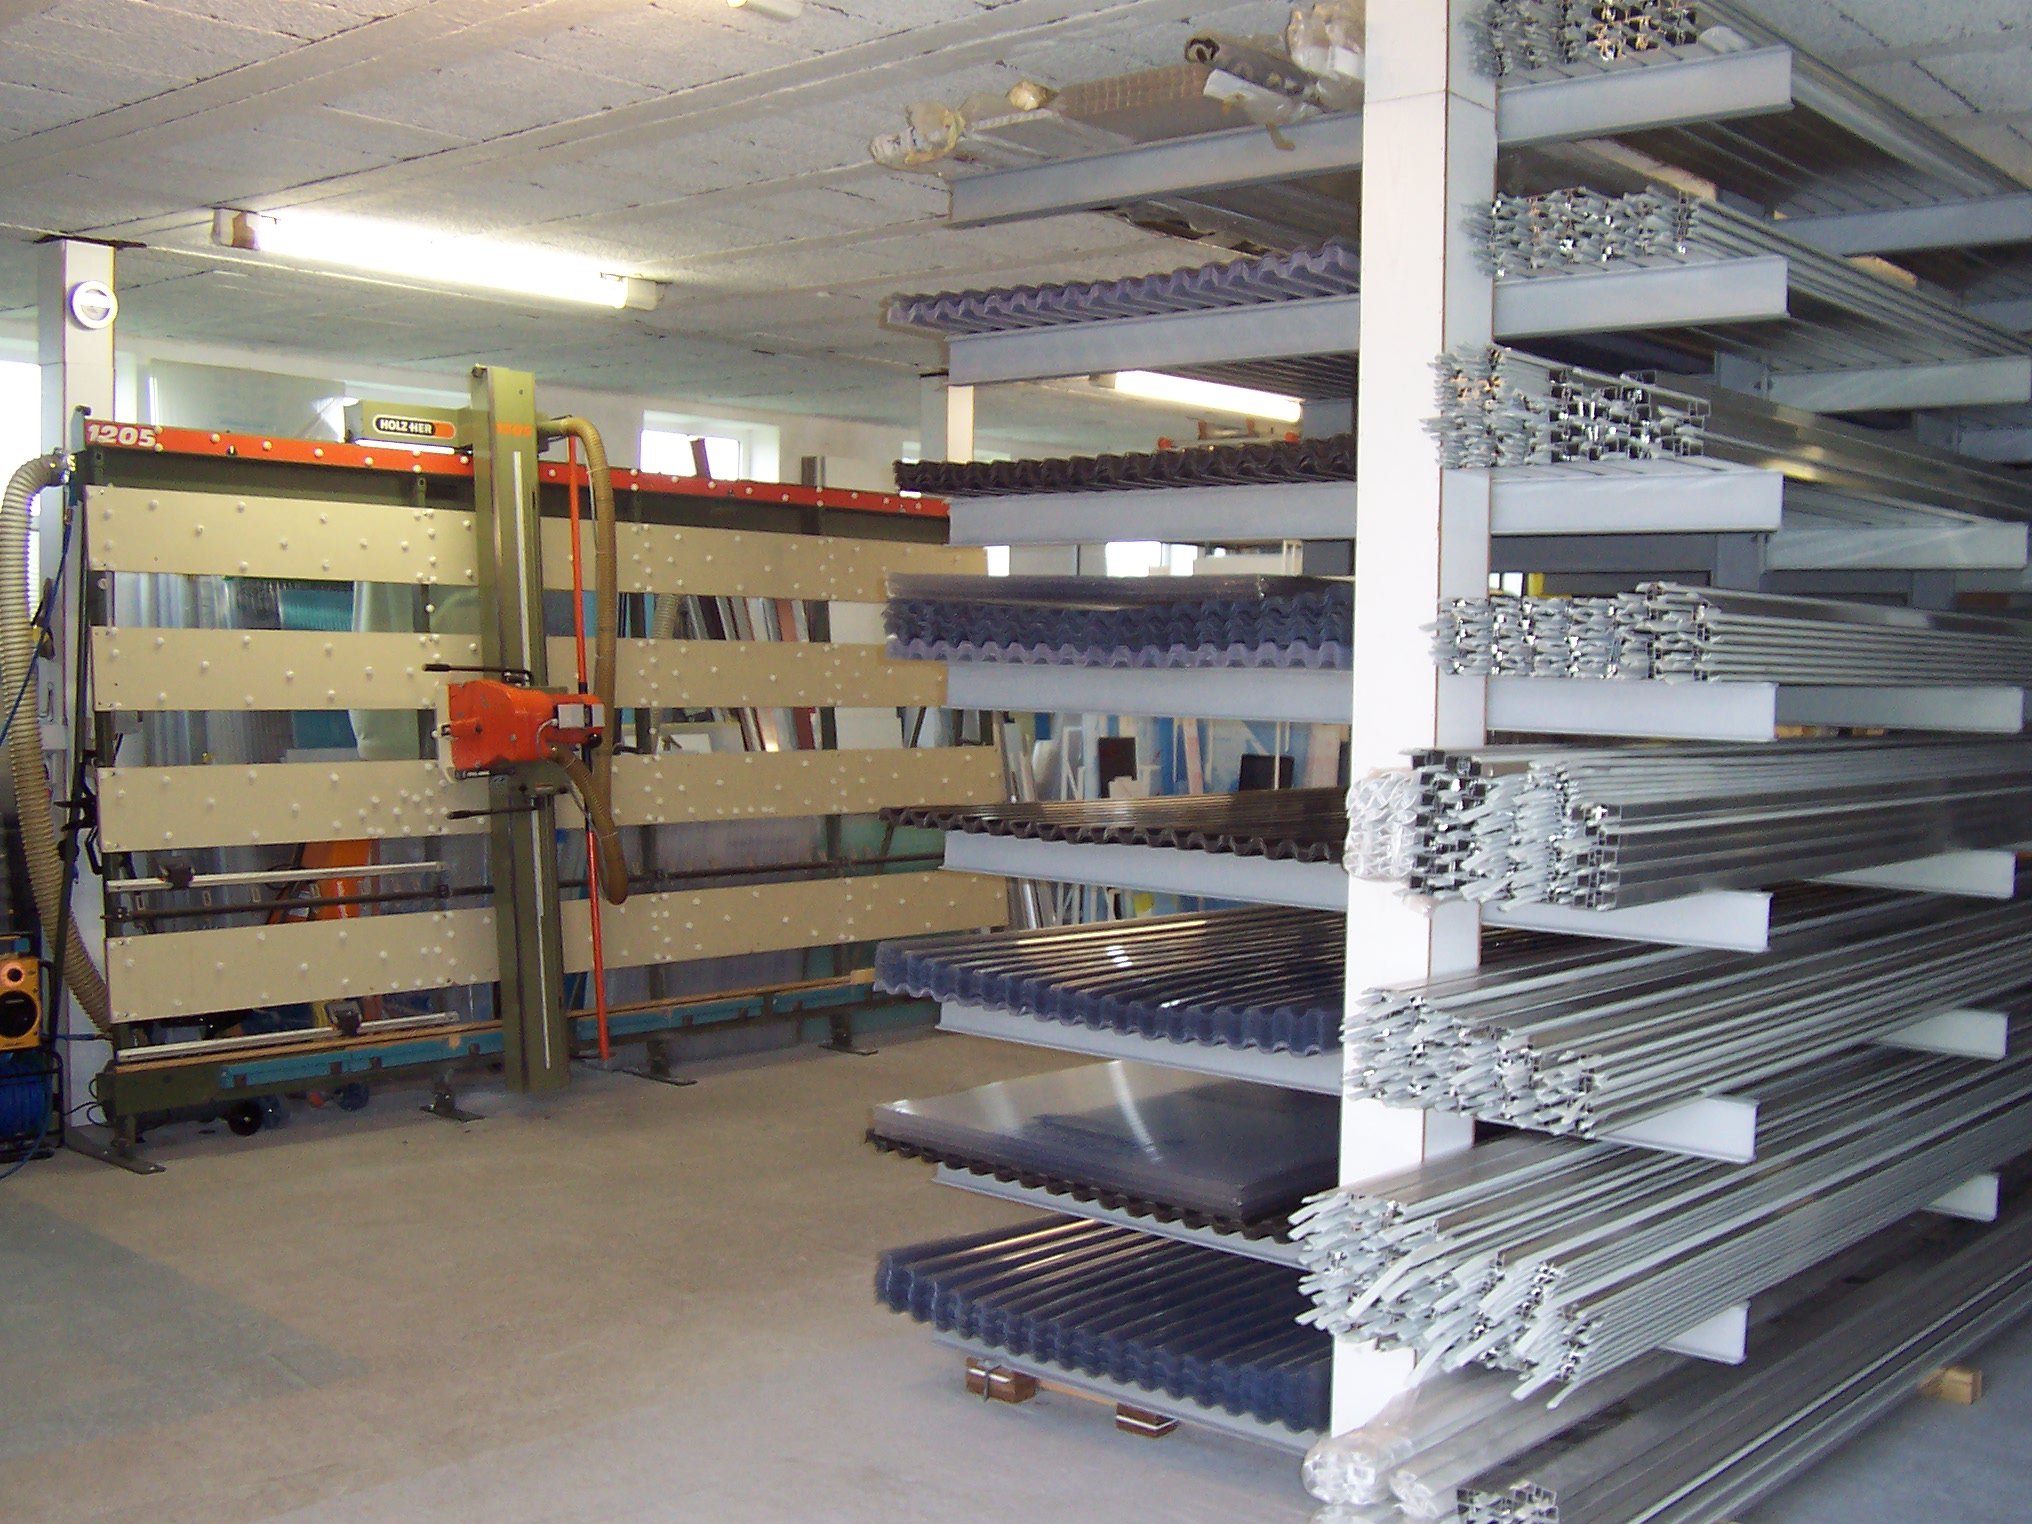 Kunststoffhandel in 21395 Tespe.
Kunststoffplatten und Profile ab Lager.
Auch im Direktverkauf.